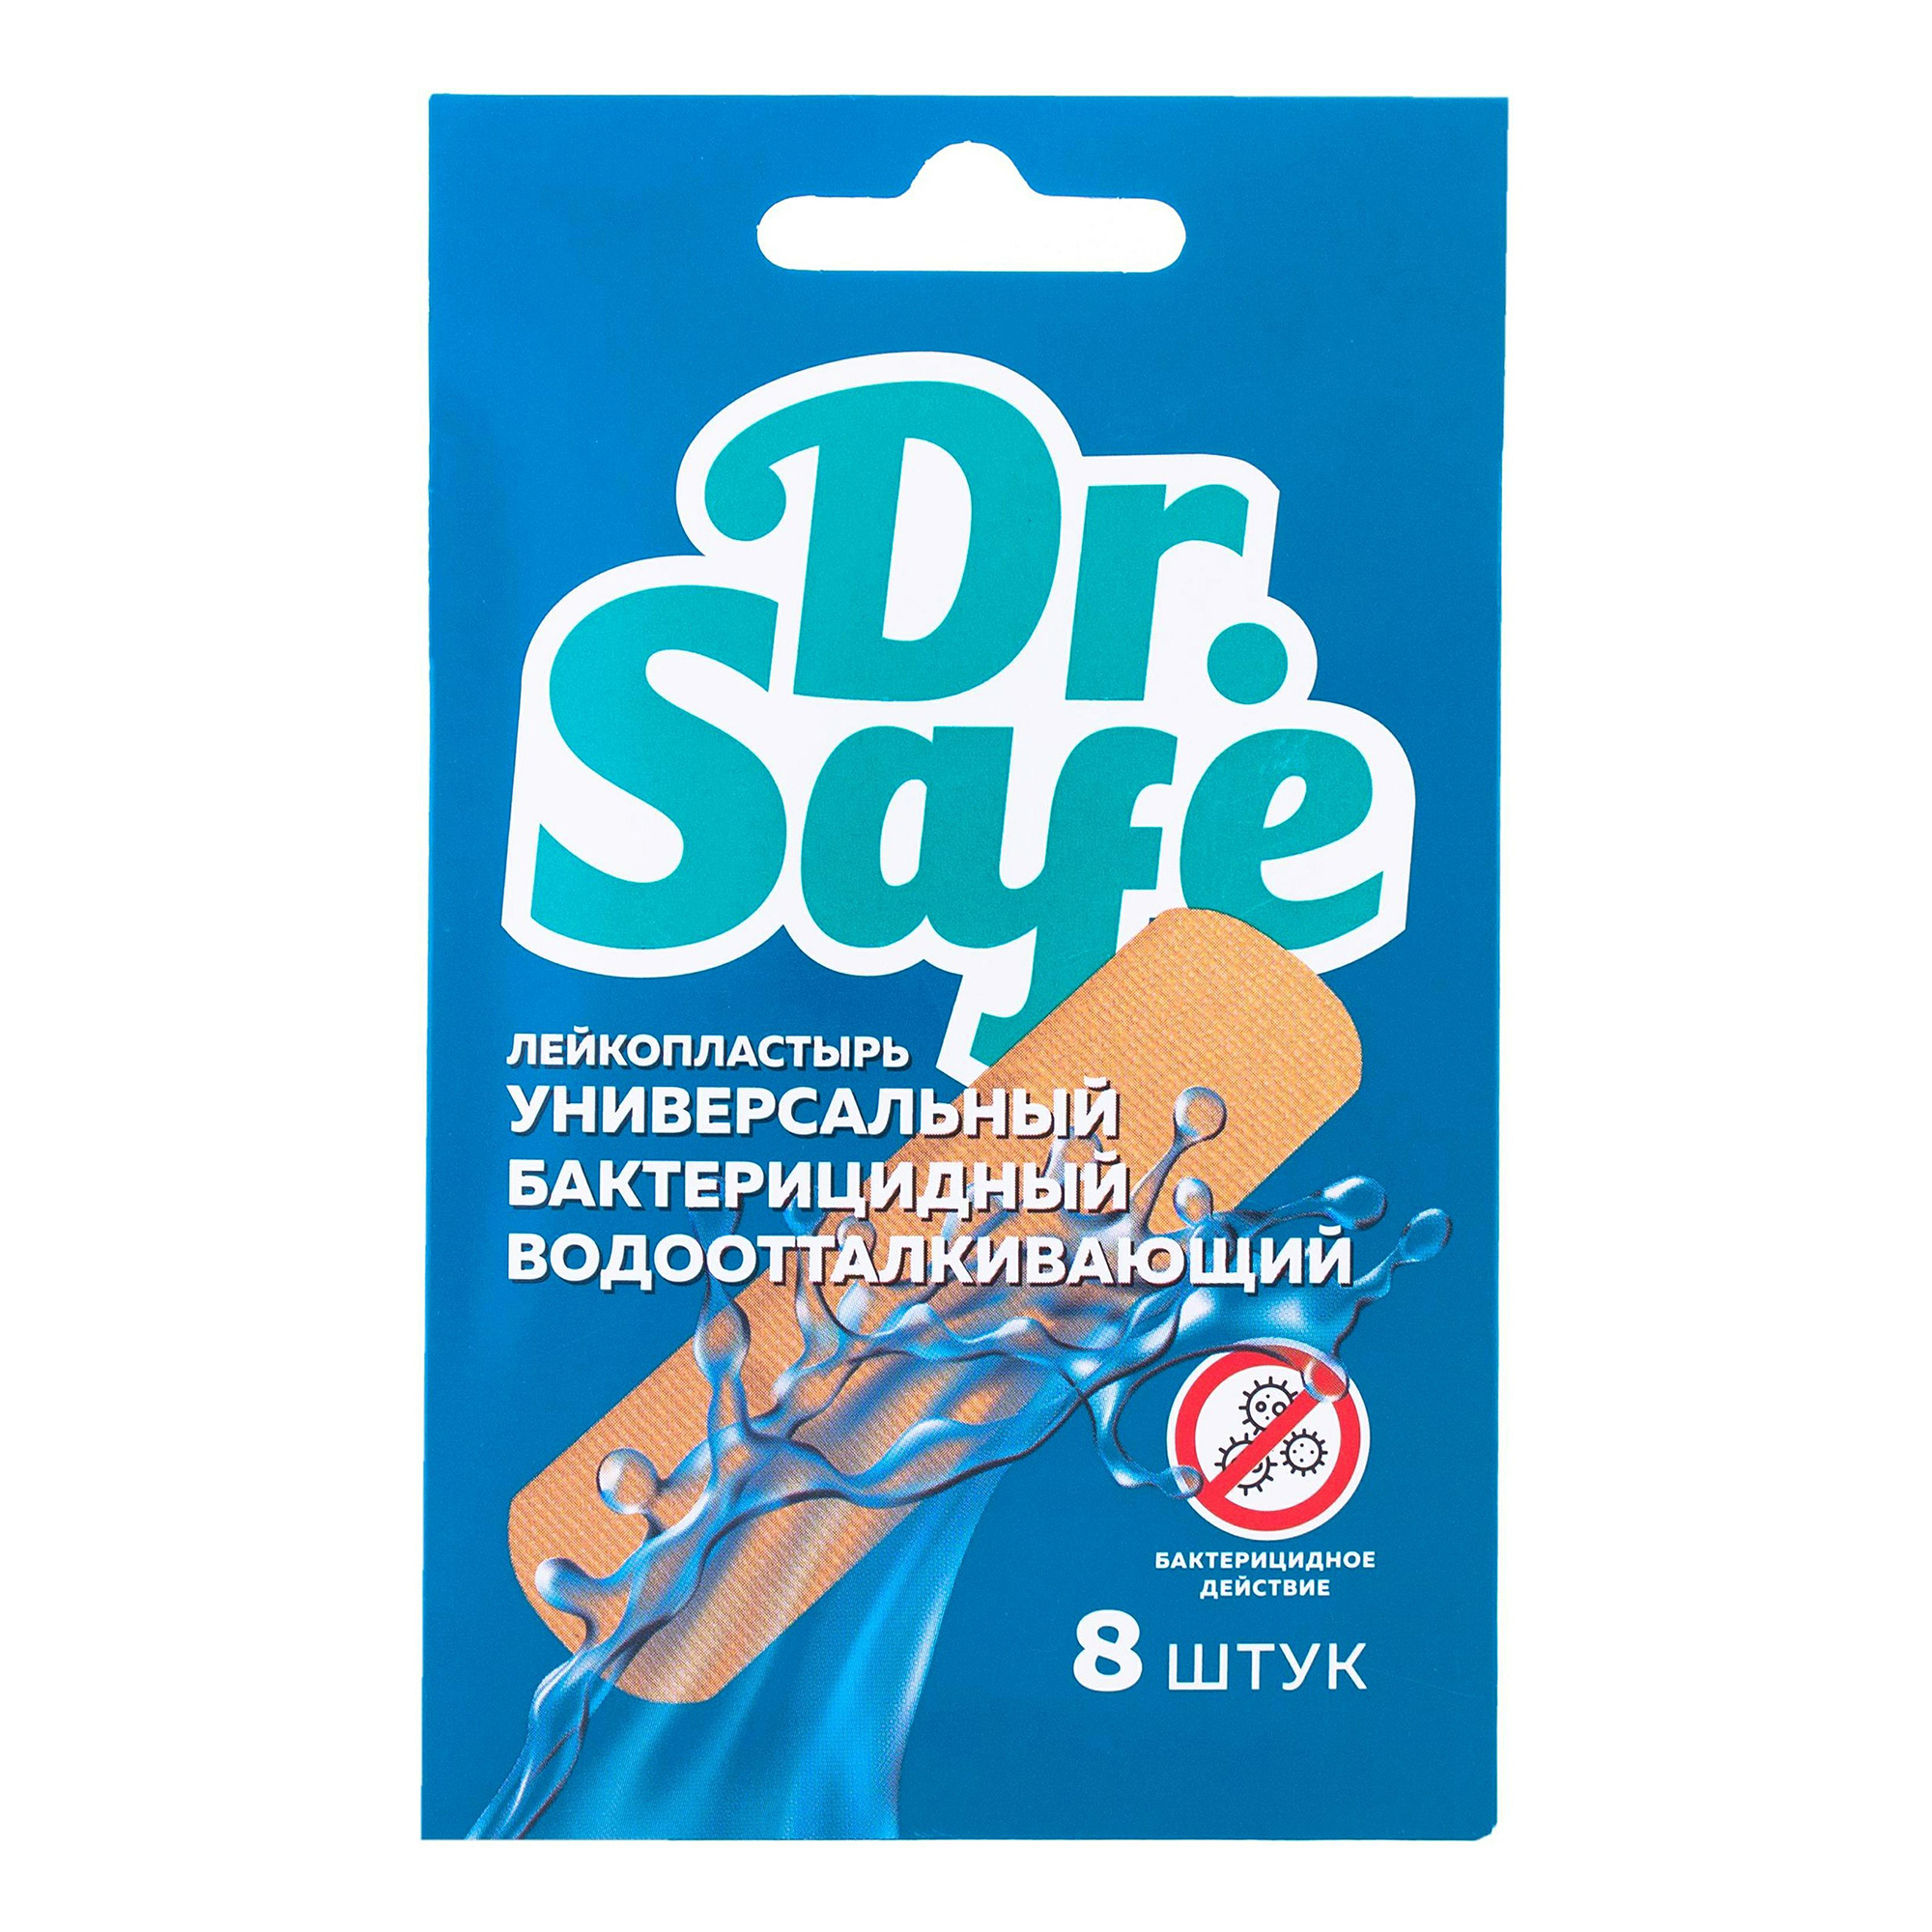 Купить Лейкопластыри Dr. Safe водоотталкивающие бактерицидные бежевые 19х72 мм 8 шт., Dr.Safe